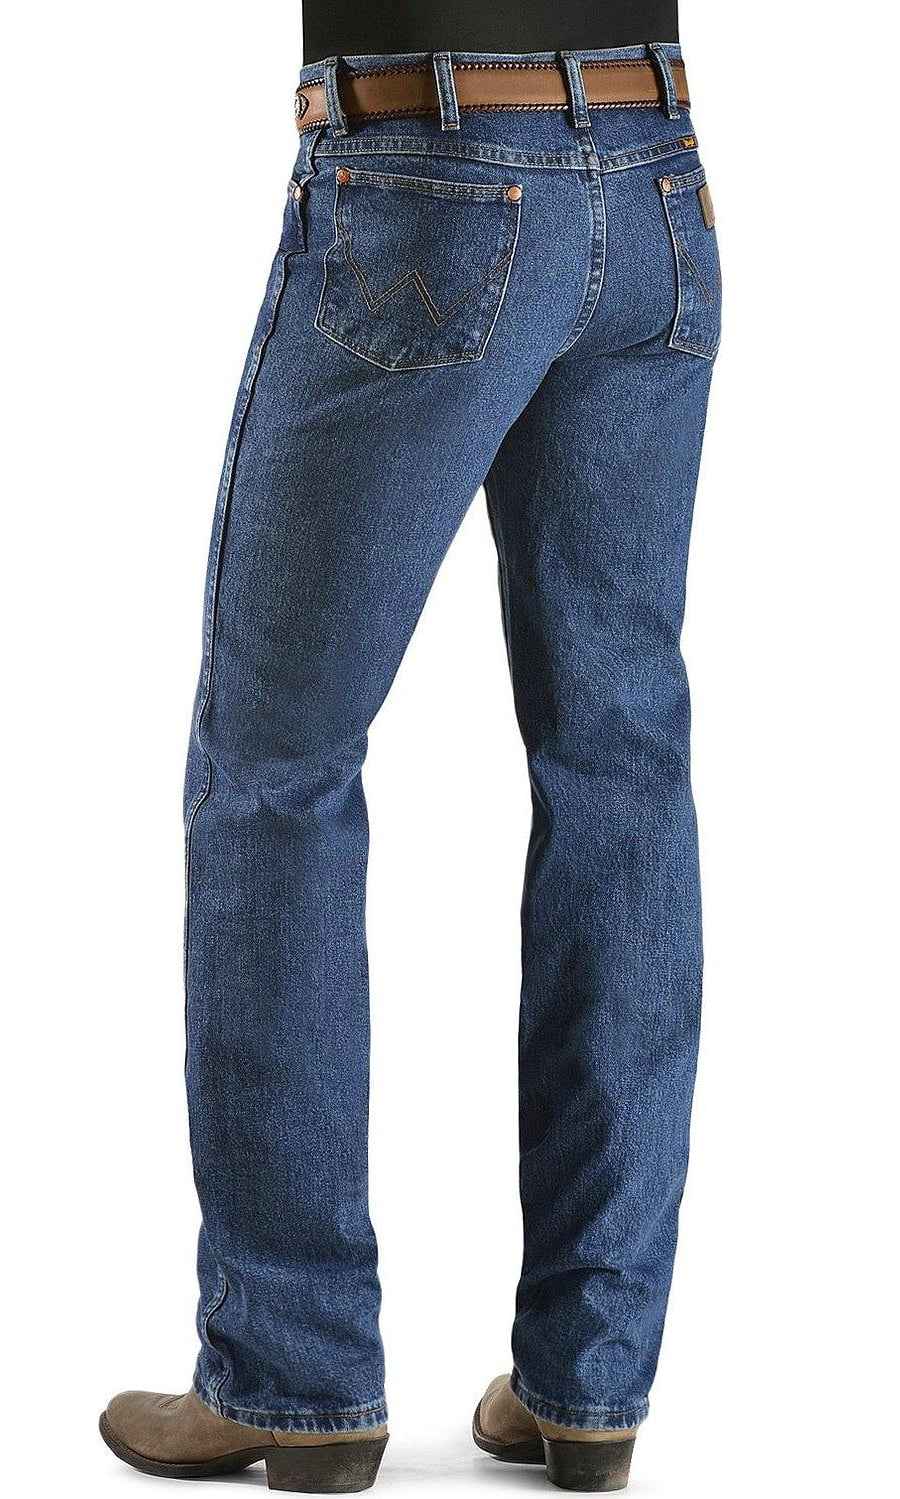 Wrangler - wrangler men's jeans 936 slim fit premium wash - blue dust ...